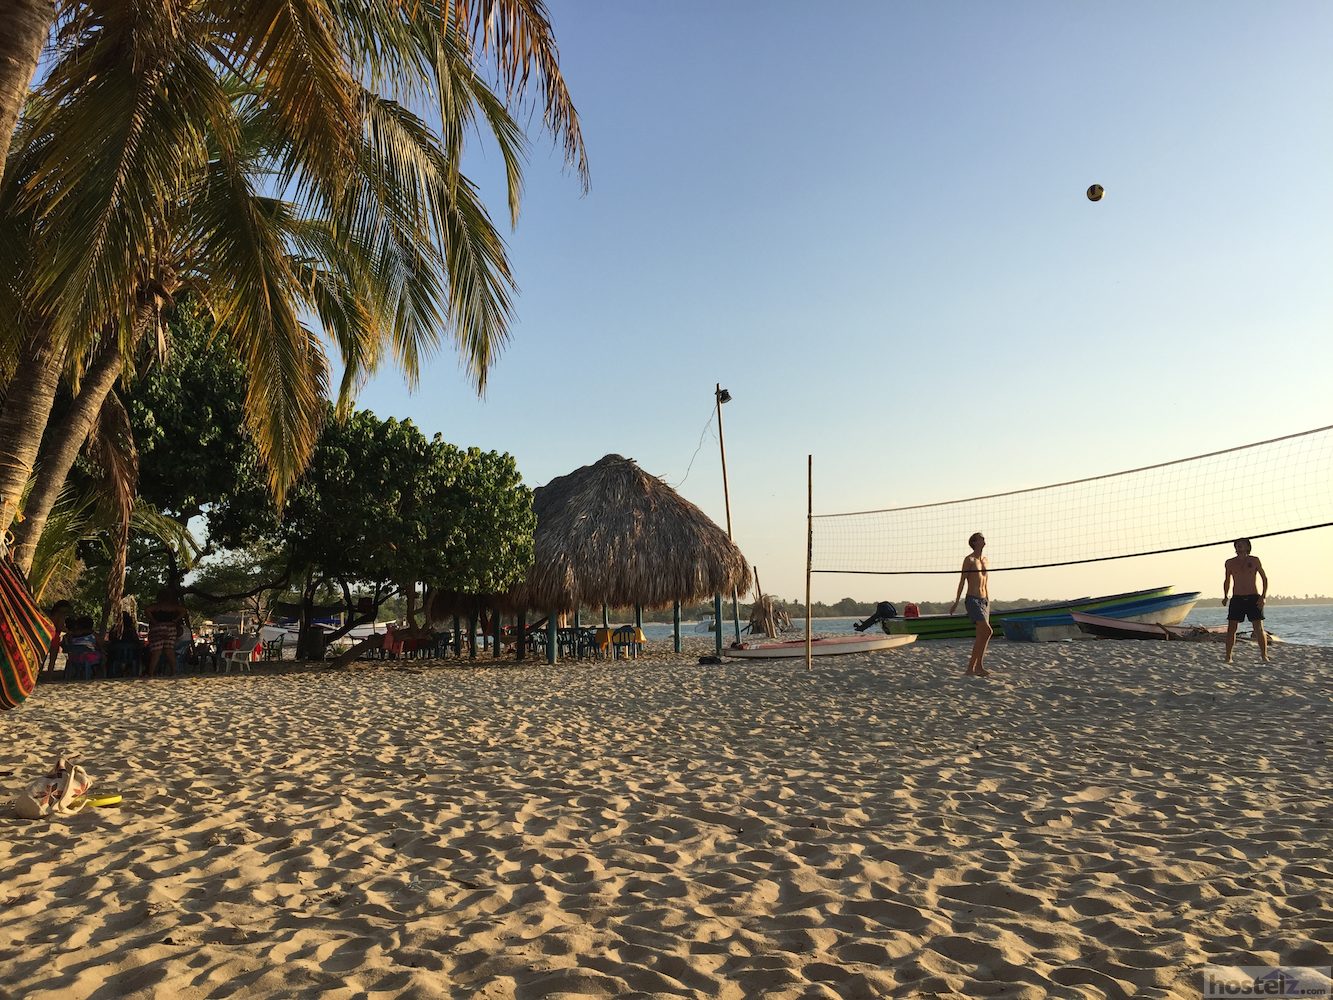 Beach volleyball court 